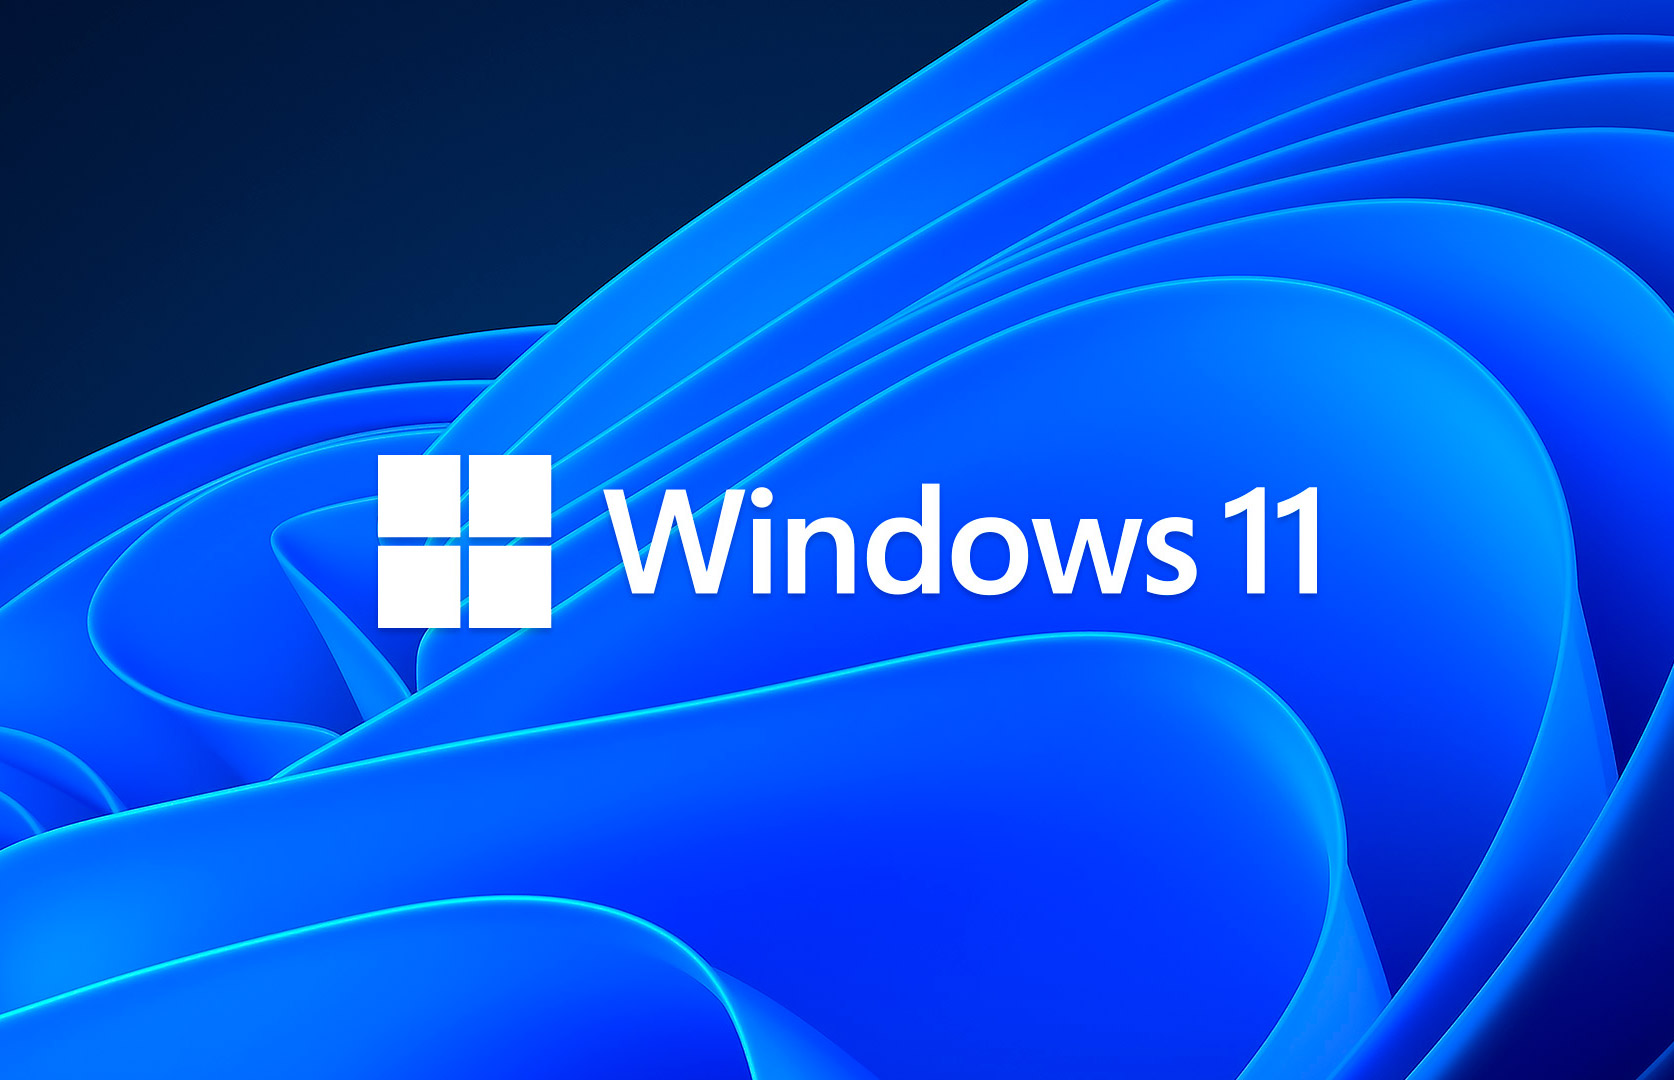 Самое крупное обновление Windows 11 теперь доступно по всему миру